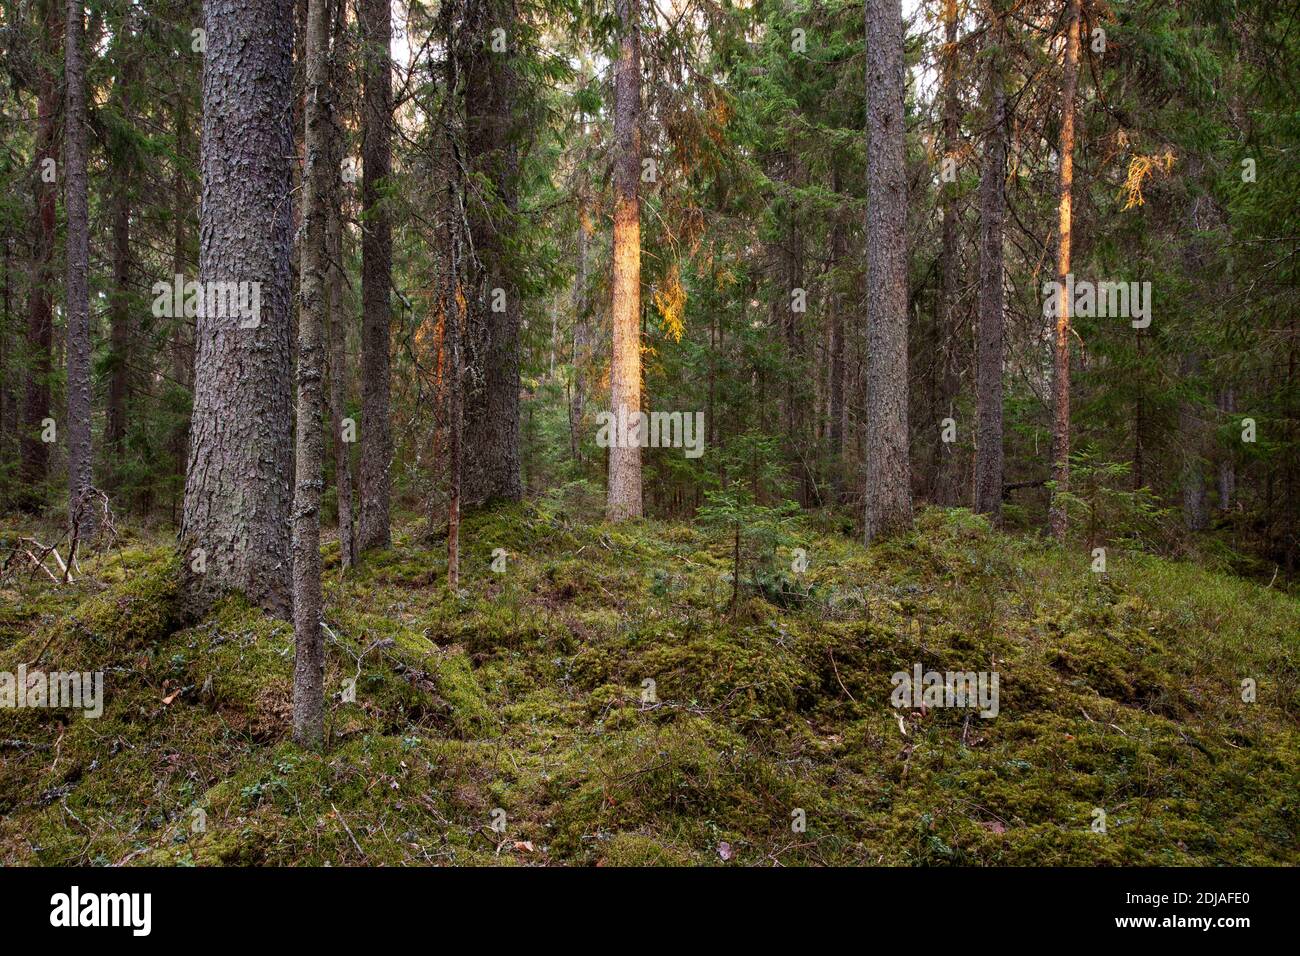 Forêt boréale de conifères dans la nature estonienne, Europe du Nord. Banque D'Images